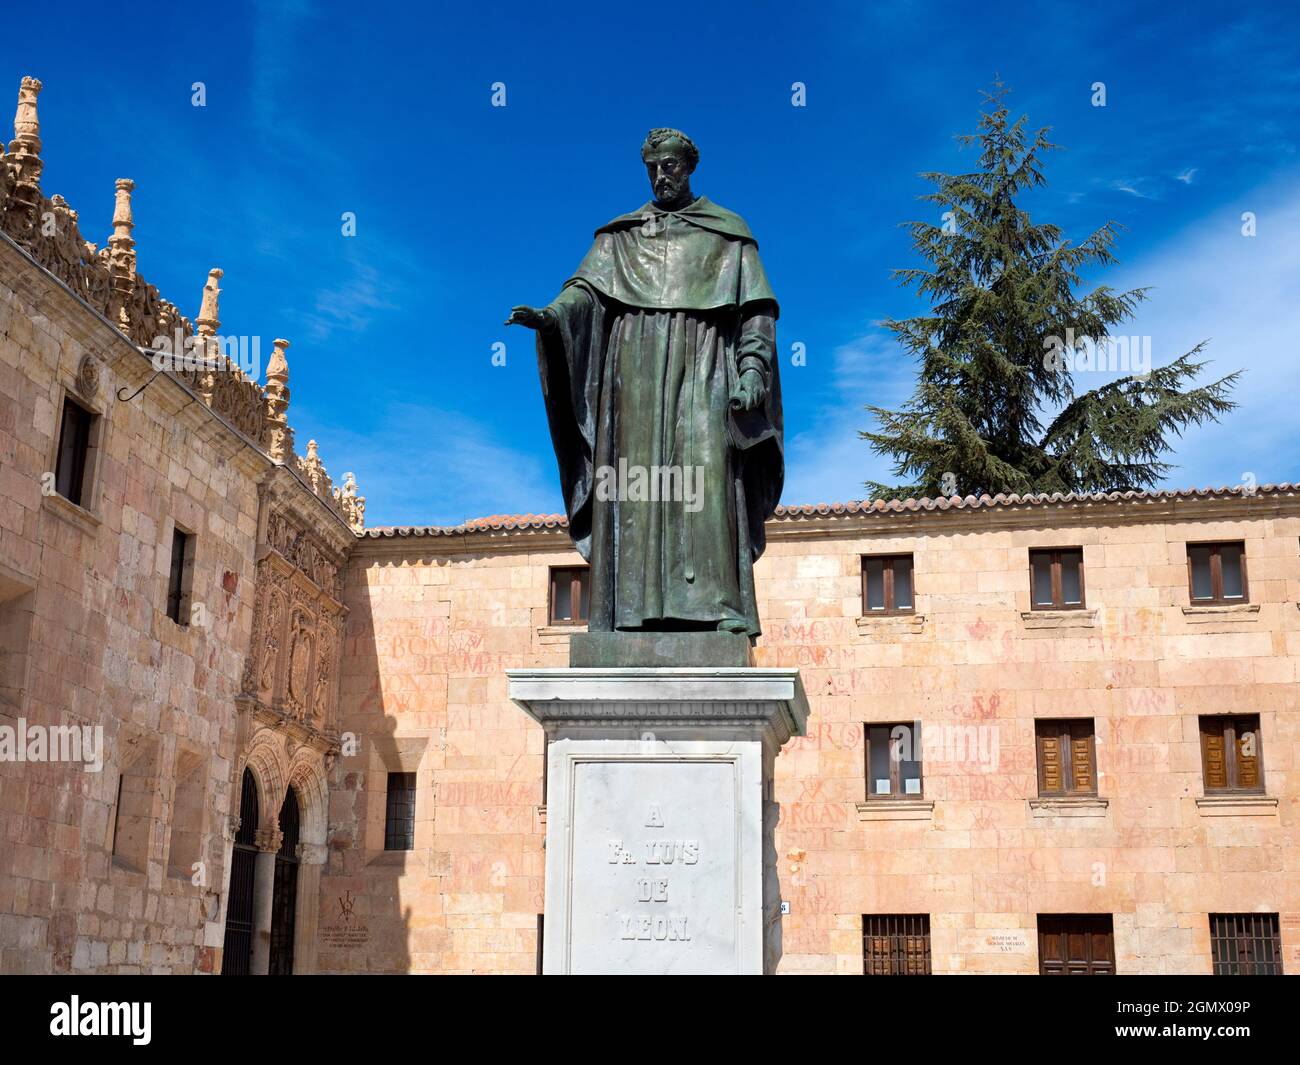 Salamanca, Spagna - 13 aprile 2017; nessuna gente in vista. Fray Luis de Leon era un famoso poeta lirico spagnolo, frate agostiniane, teologo e accademico, wh Foto Stock